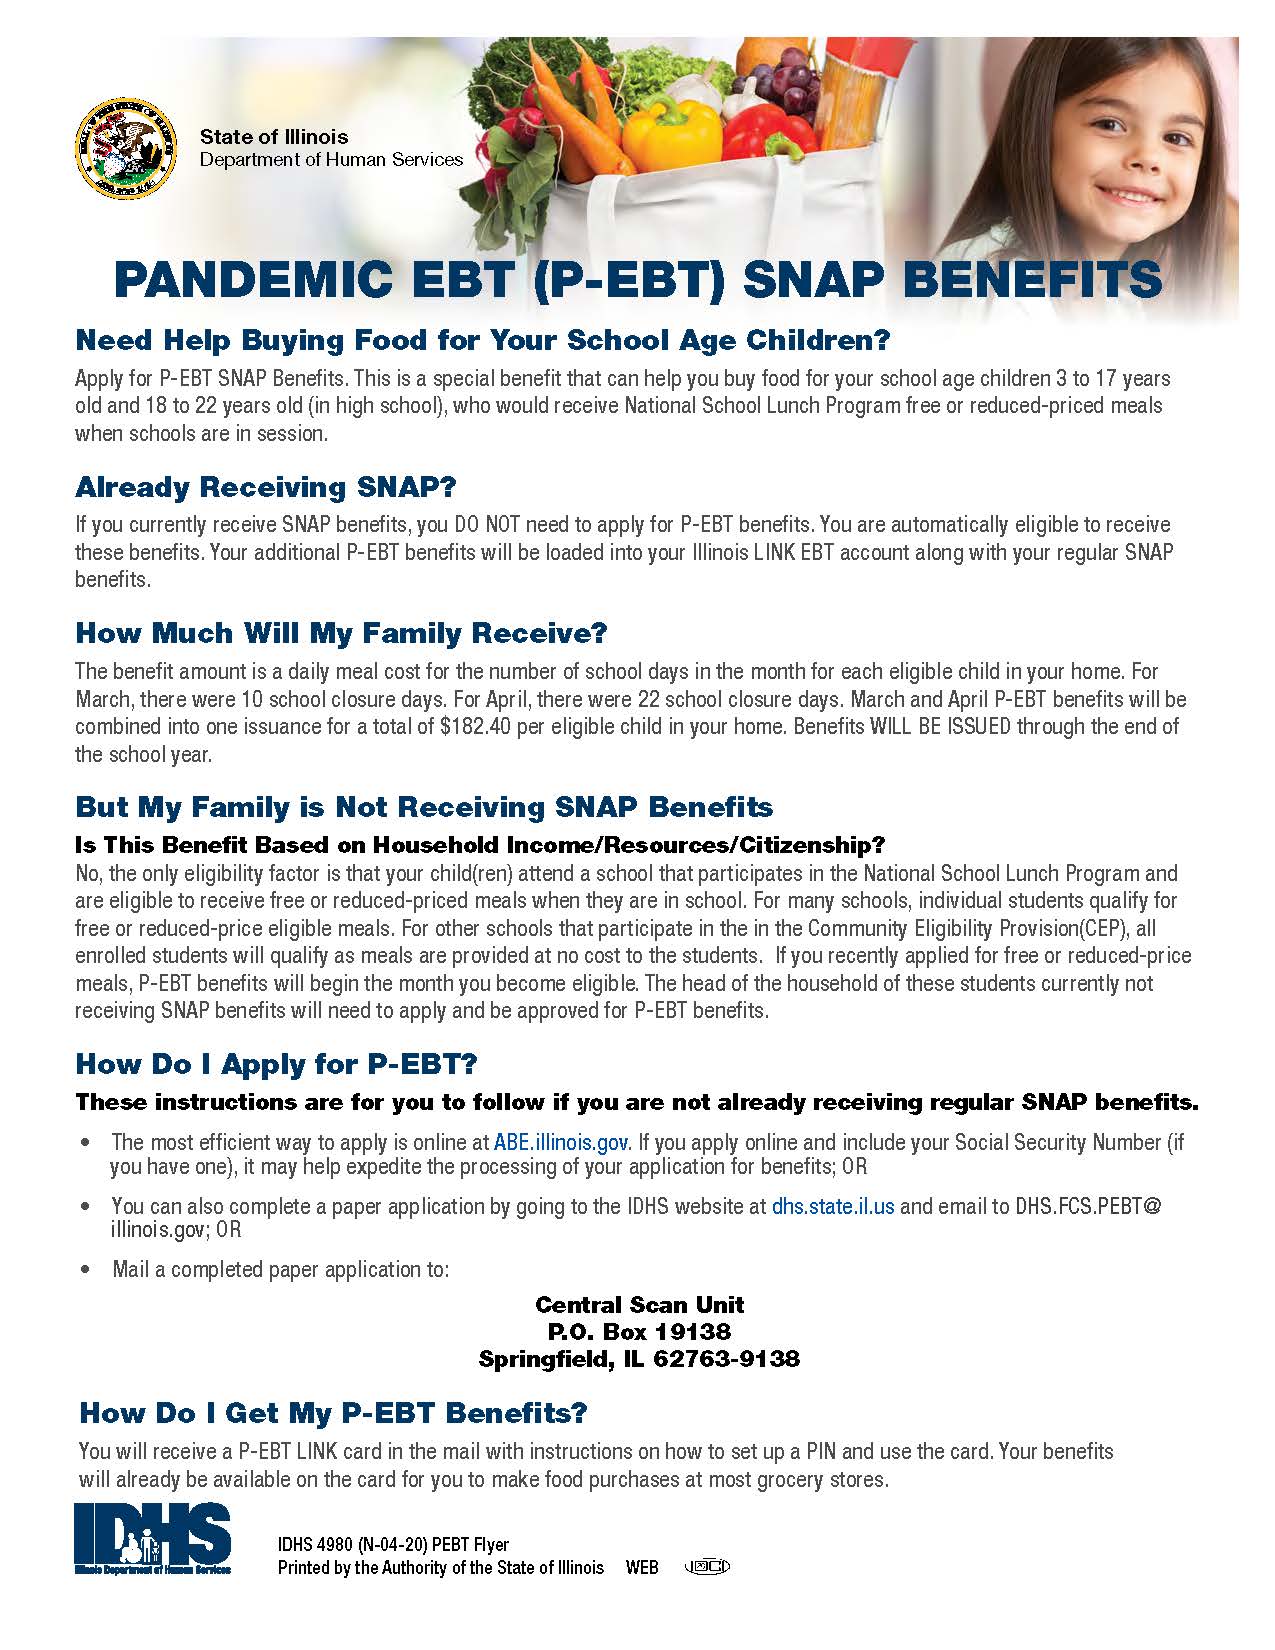 Pandemic EBT (P-EBT) SNAP Benefits Flyer